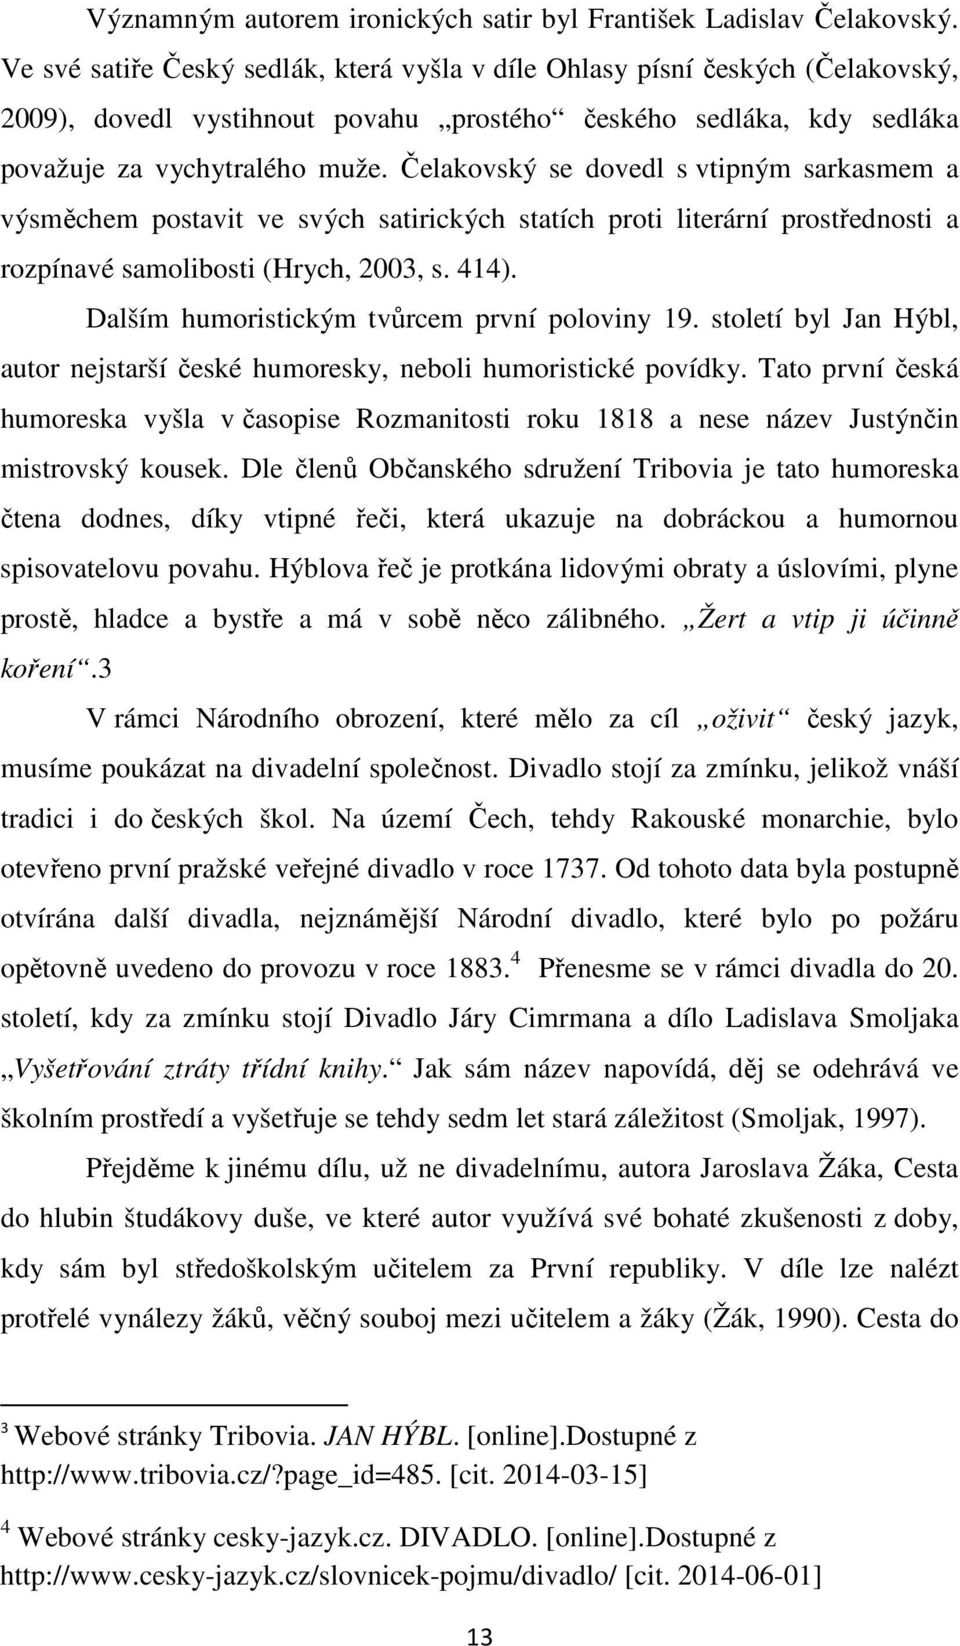 Čelakovský se dovedl s vtipným sarkasmem a výsměchem postavit ve svých satirických statích proti literární prostřednosti a rozpínavé samolibosti (Hrych, 2003, s. 414).